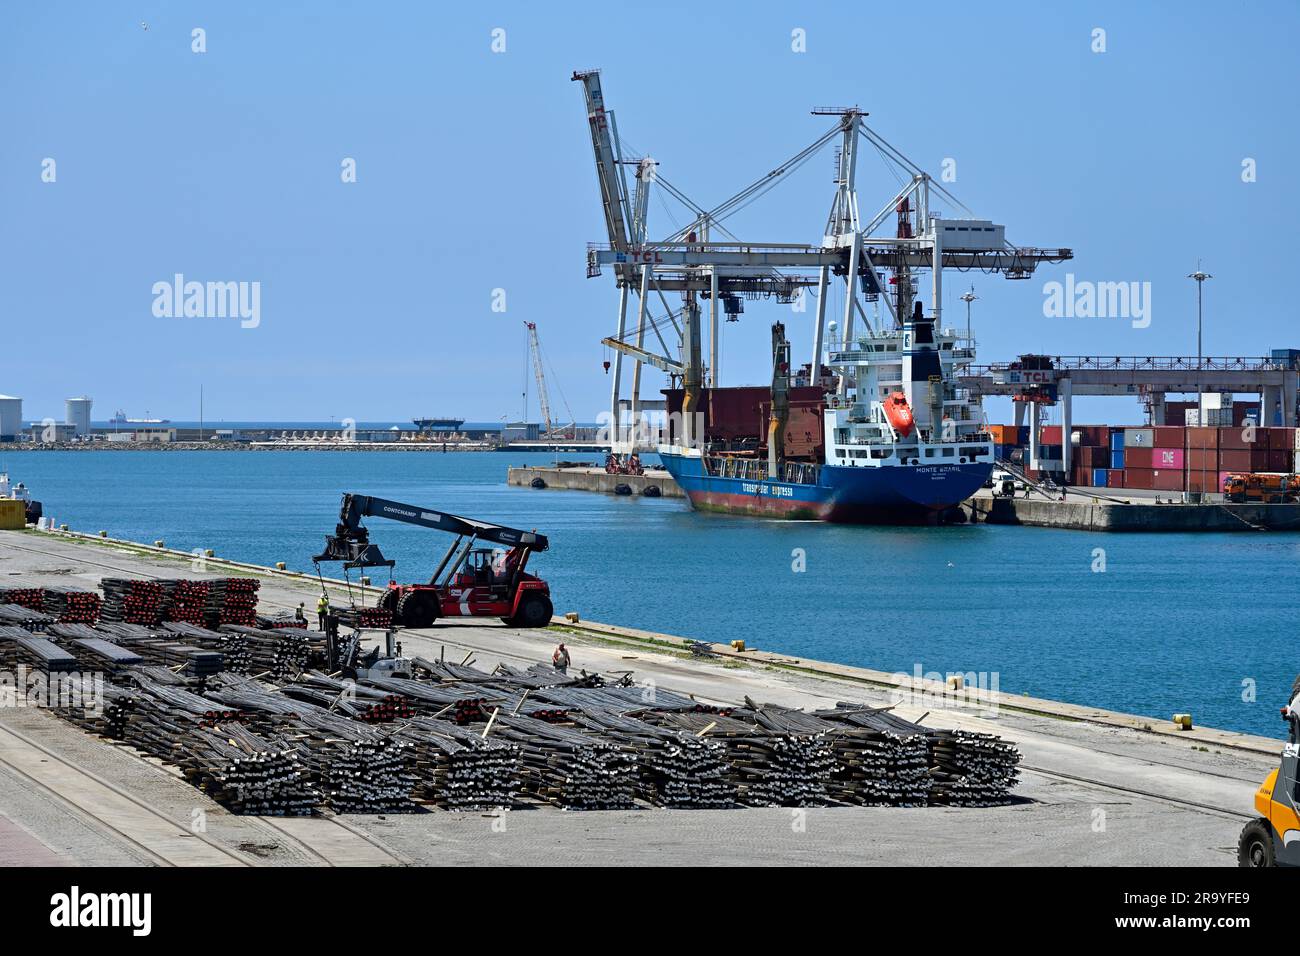 Hafenseite des Docks mit Stahlstangen und Containerschiff, das auf der anderen Seite des Wassers entladen wird, Porto, Portugal Stockfoto